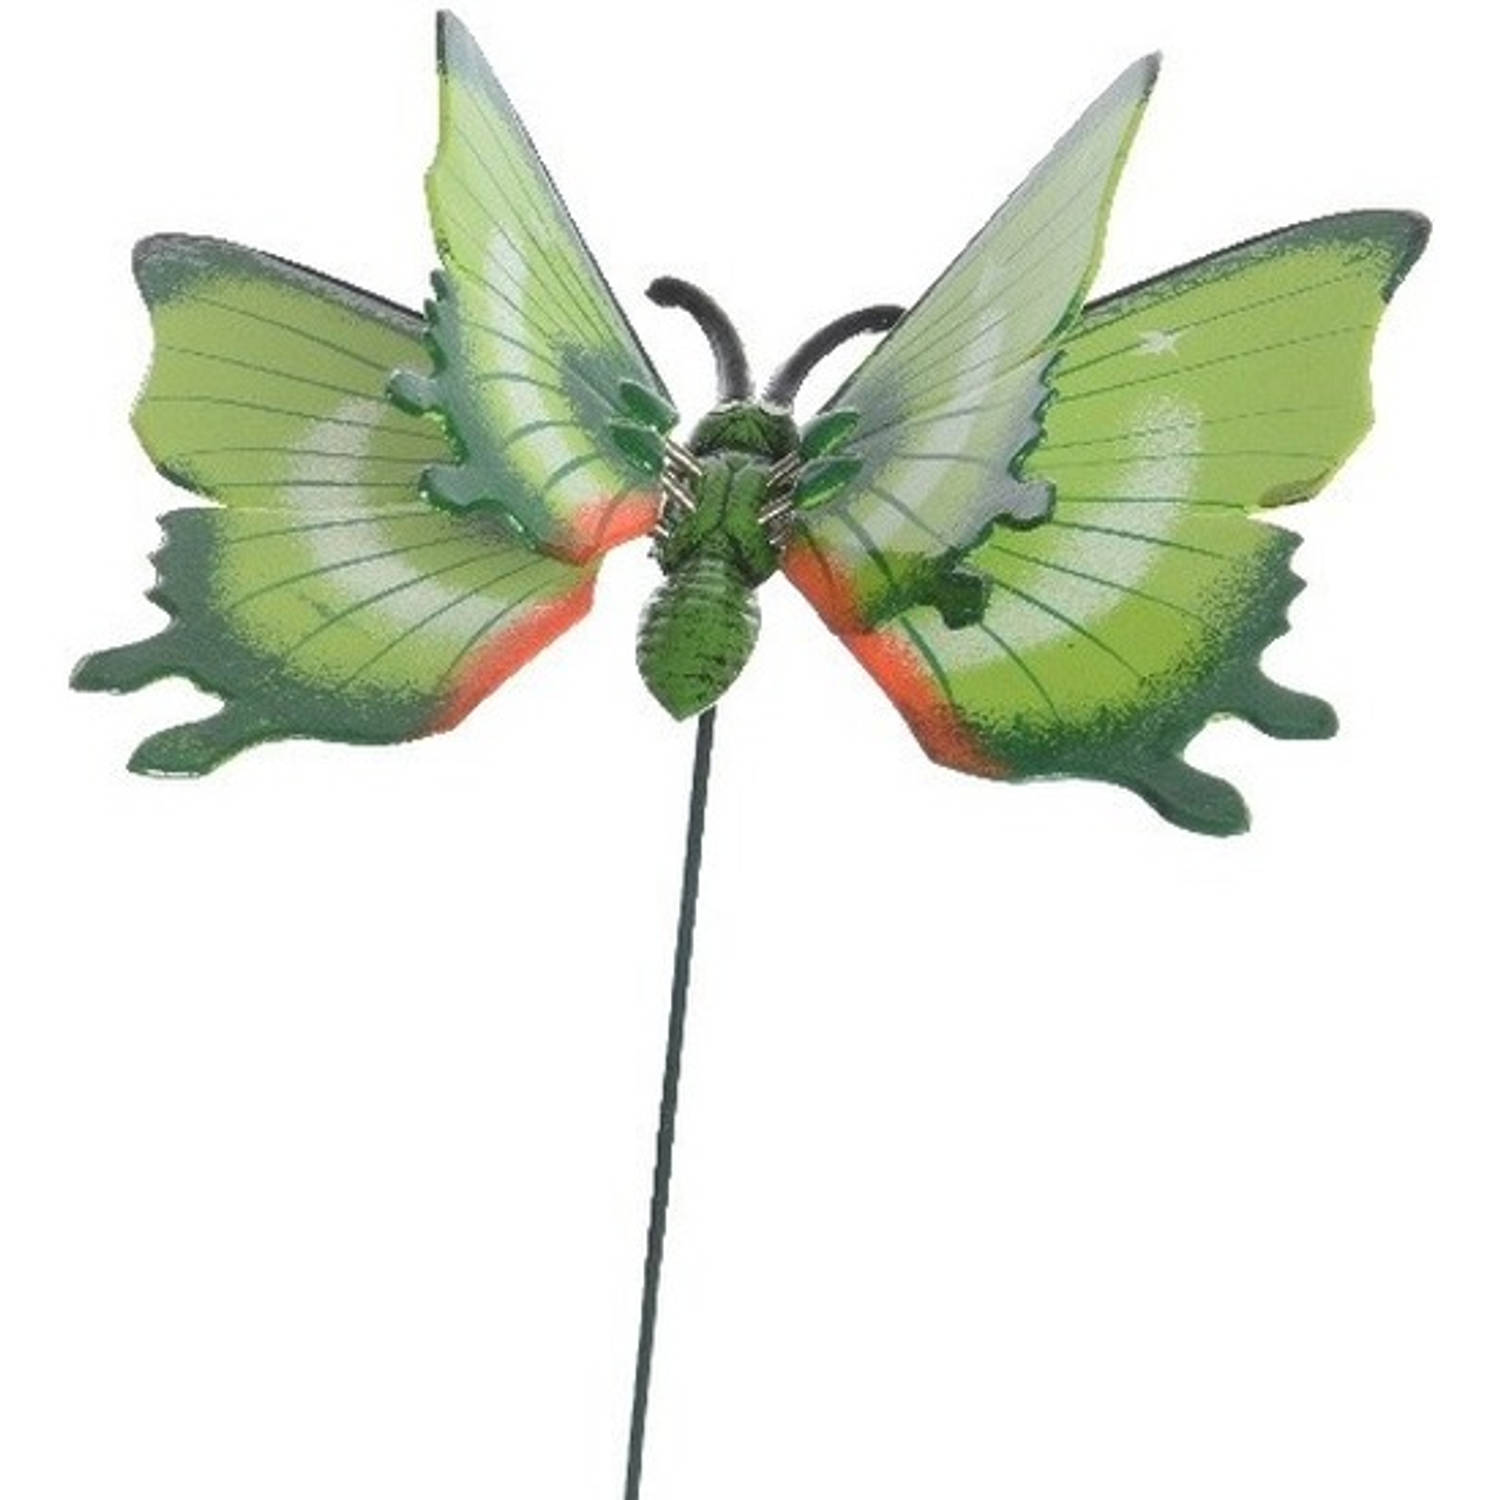 Groene metalen tuindecoratie vlinder op stok 17 x 60 cm - Tuinbeelden